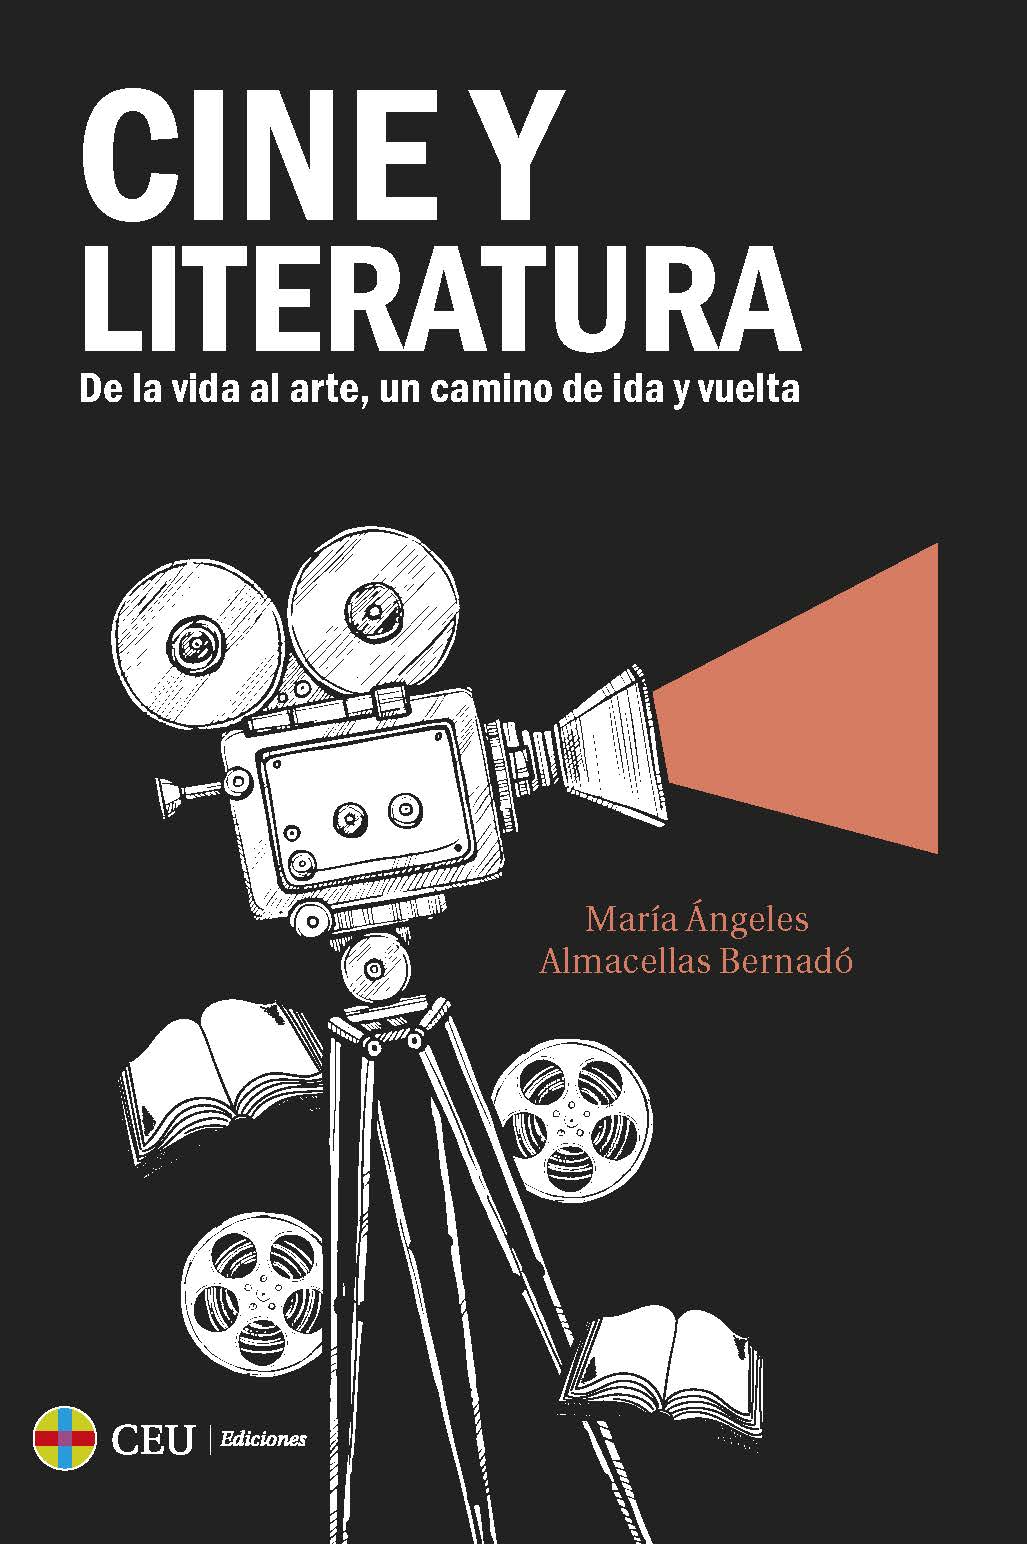 Imagen de portada del libro Cine y literatura